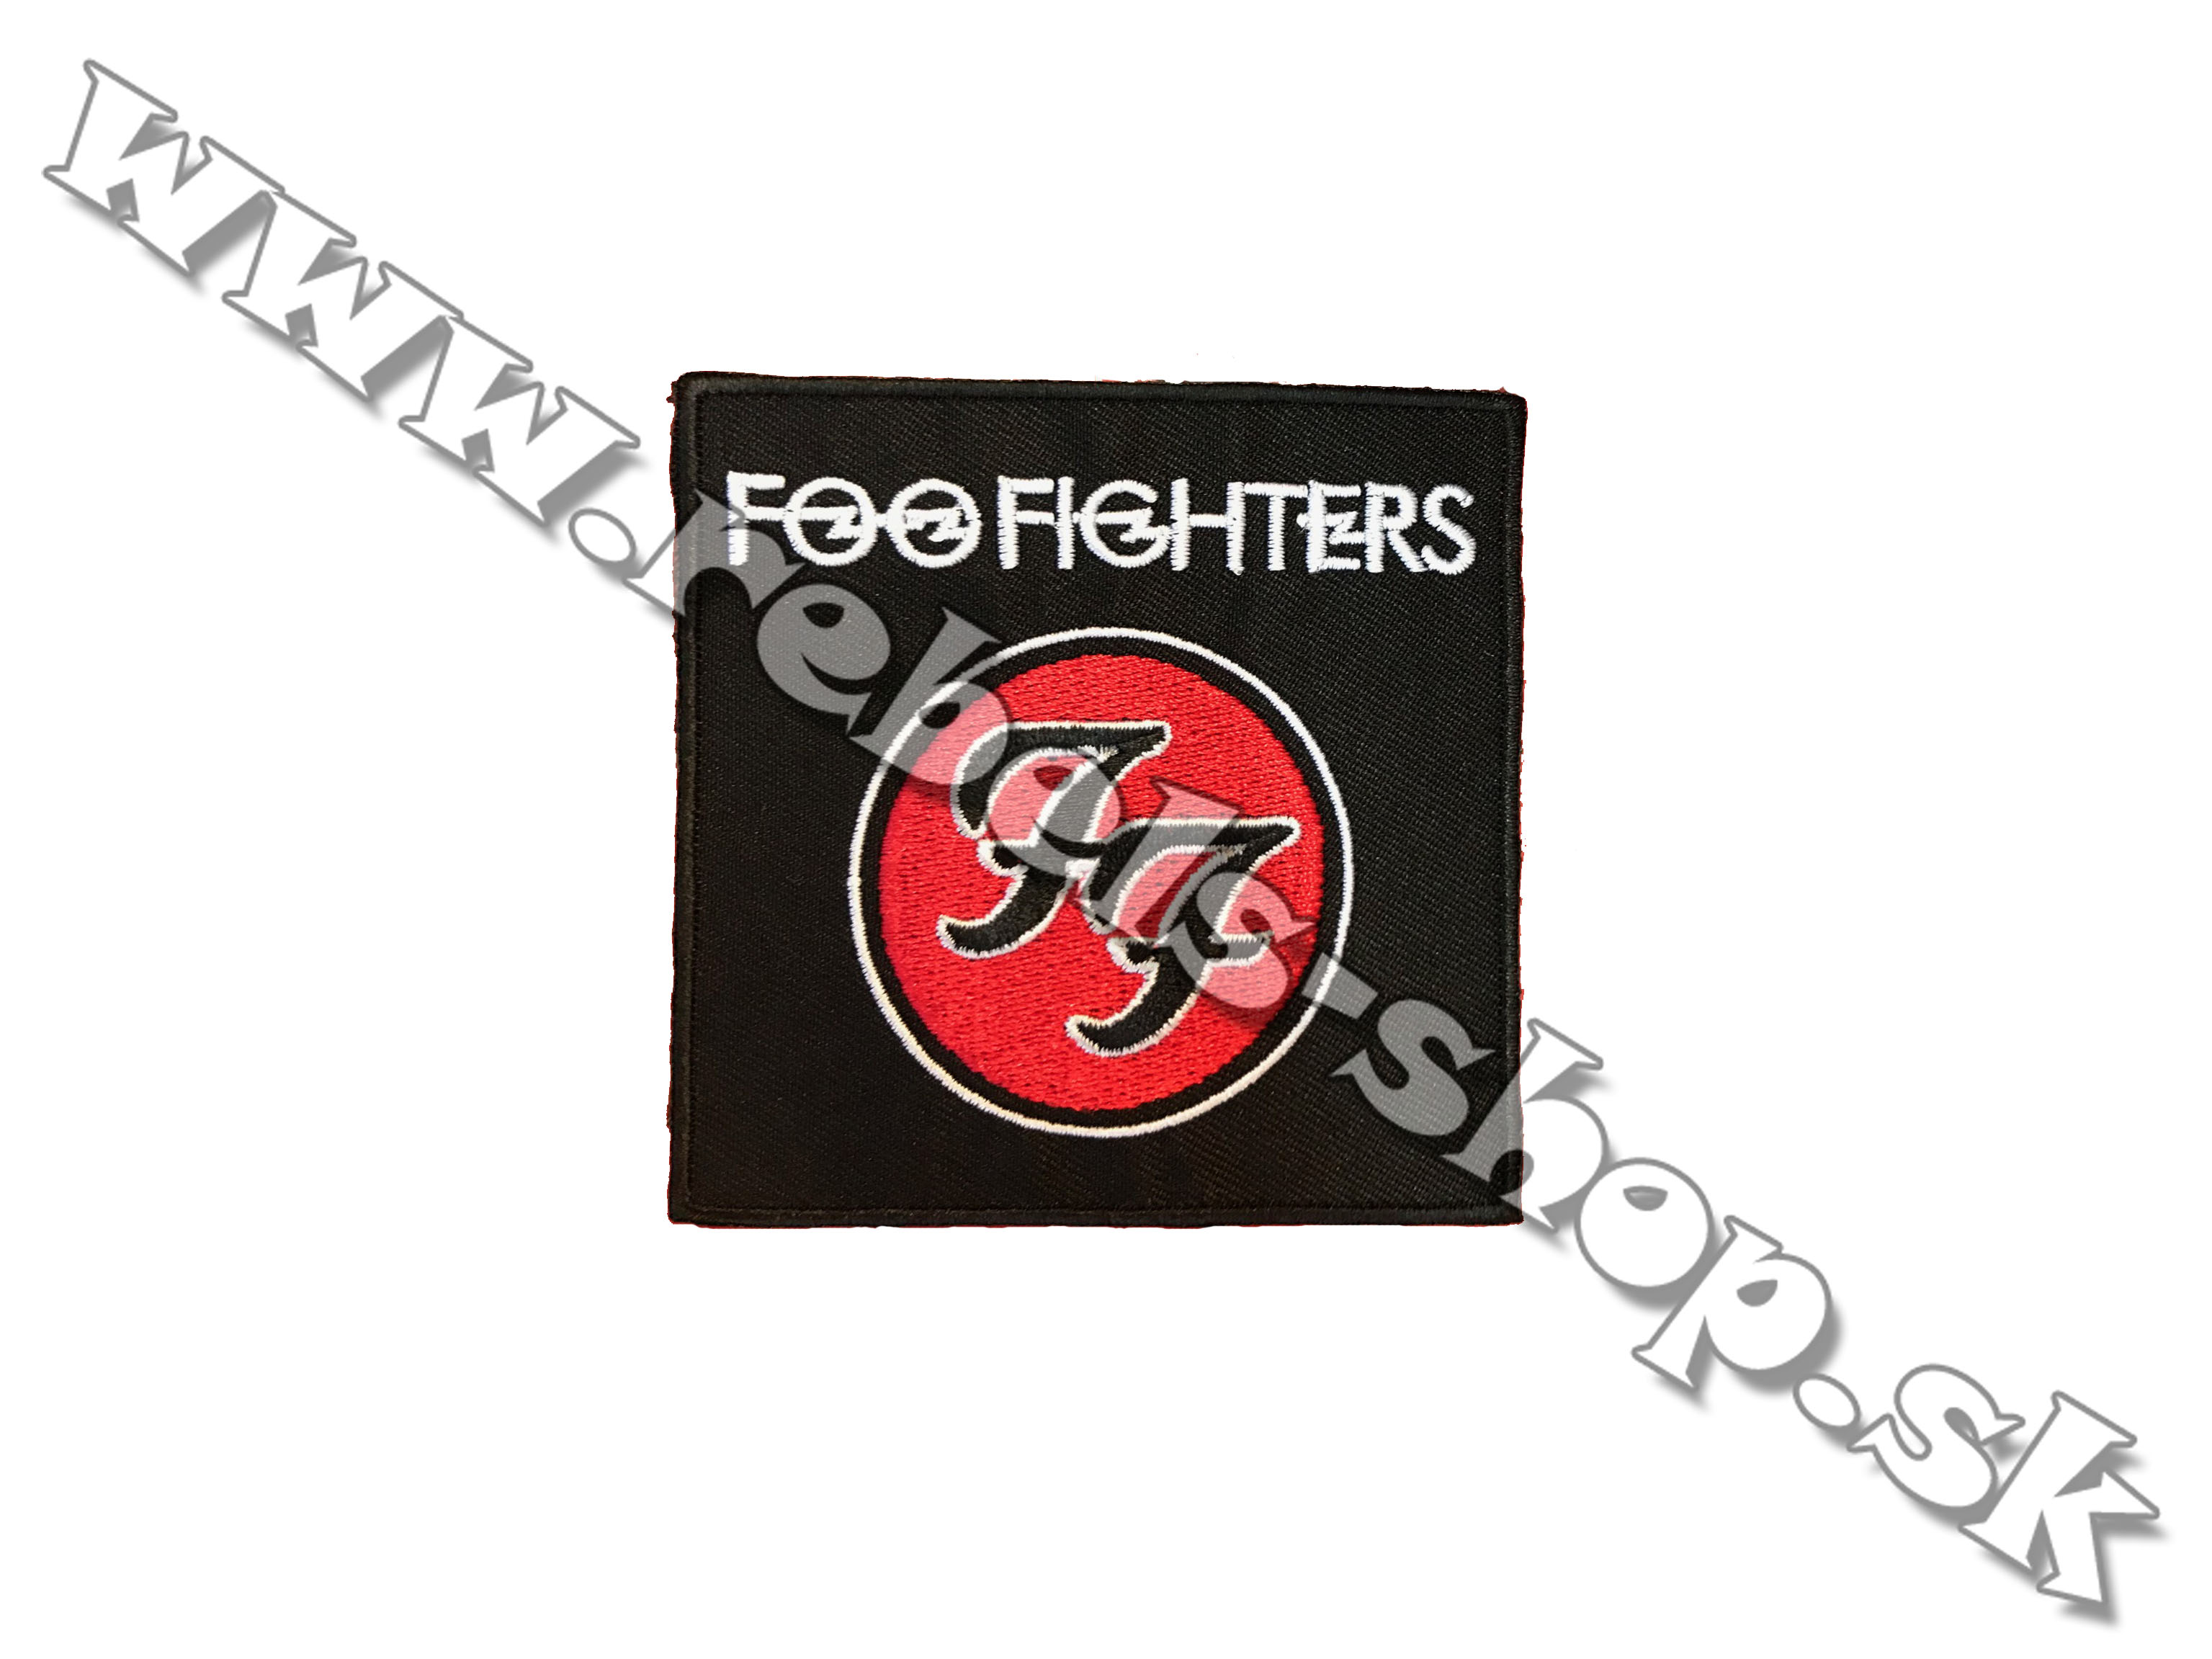 Nášivka "Foo Fighters"